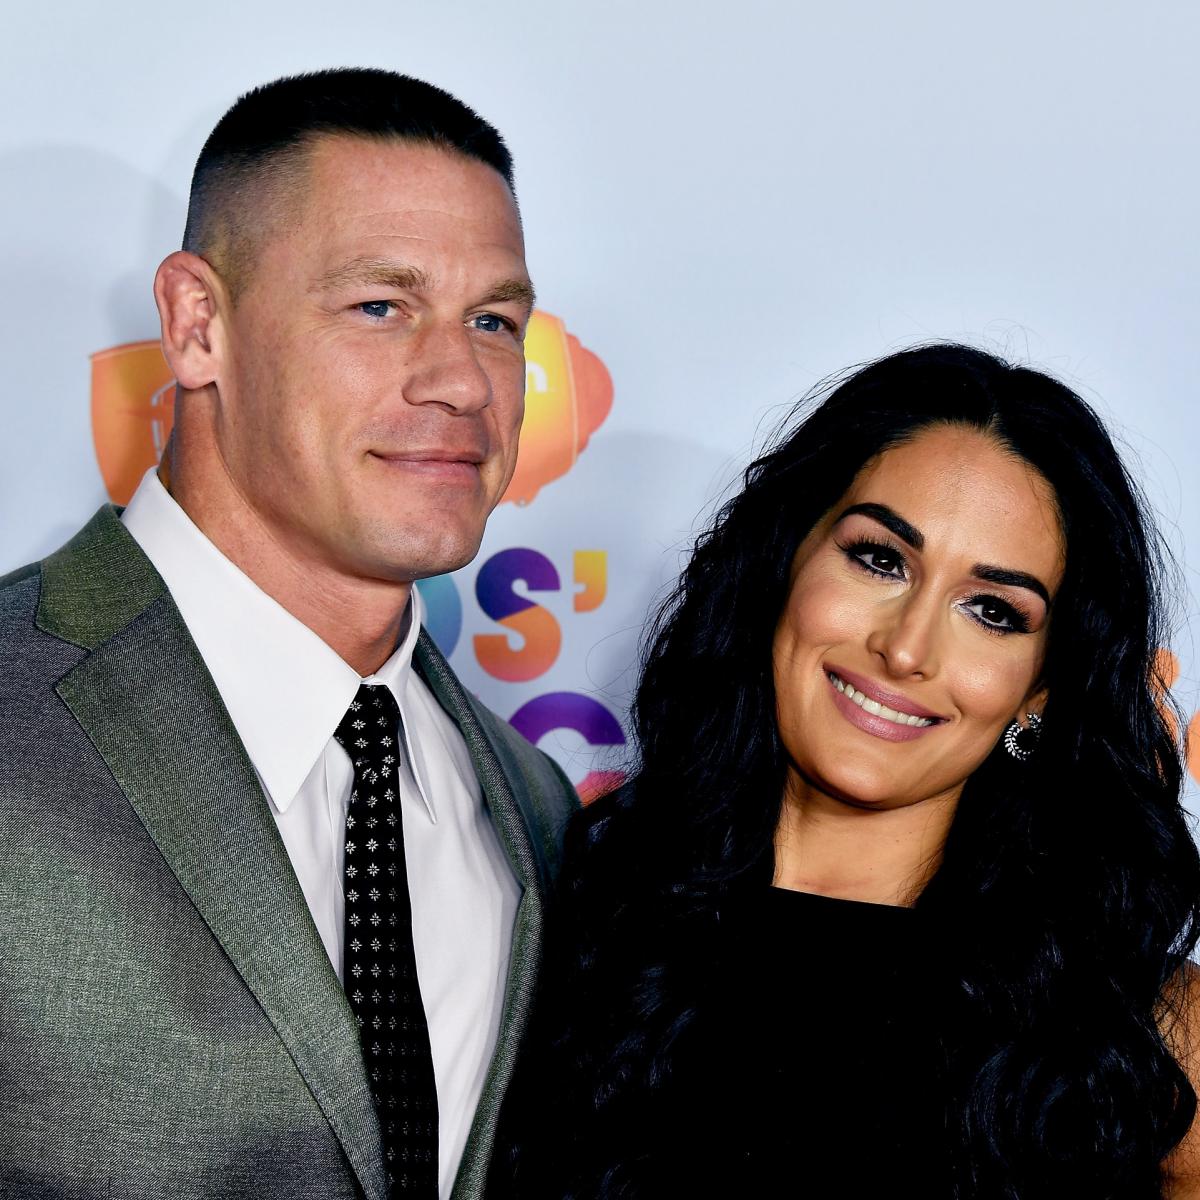 John Cena, Nikki Bella Get Engaged After Winning WWE WrestleMania 33 Match | Bleacher ...1200 x 1200